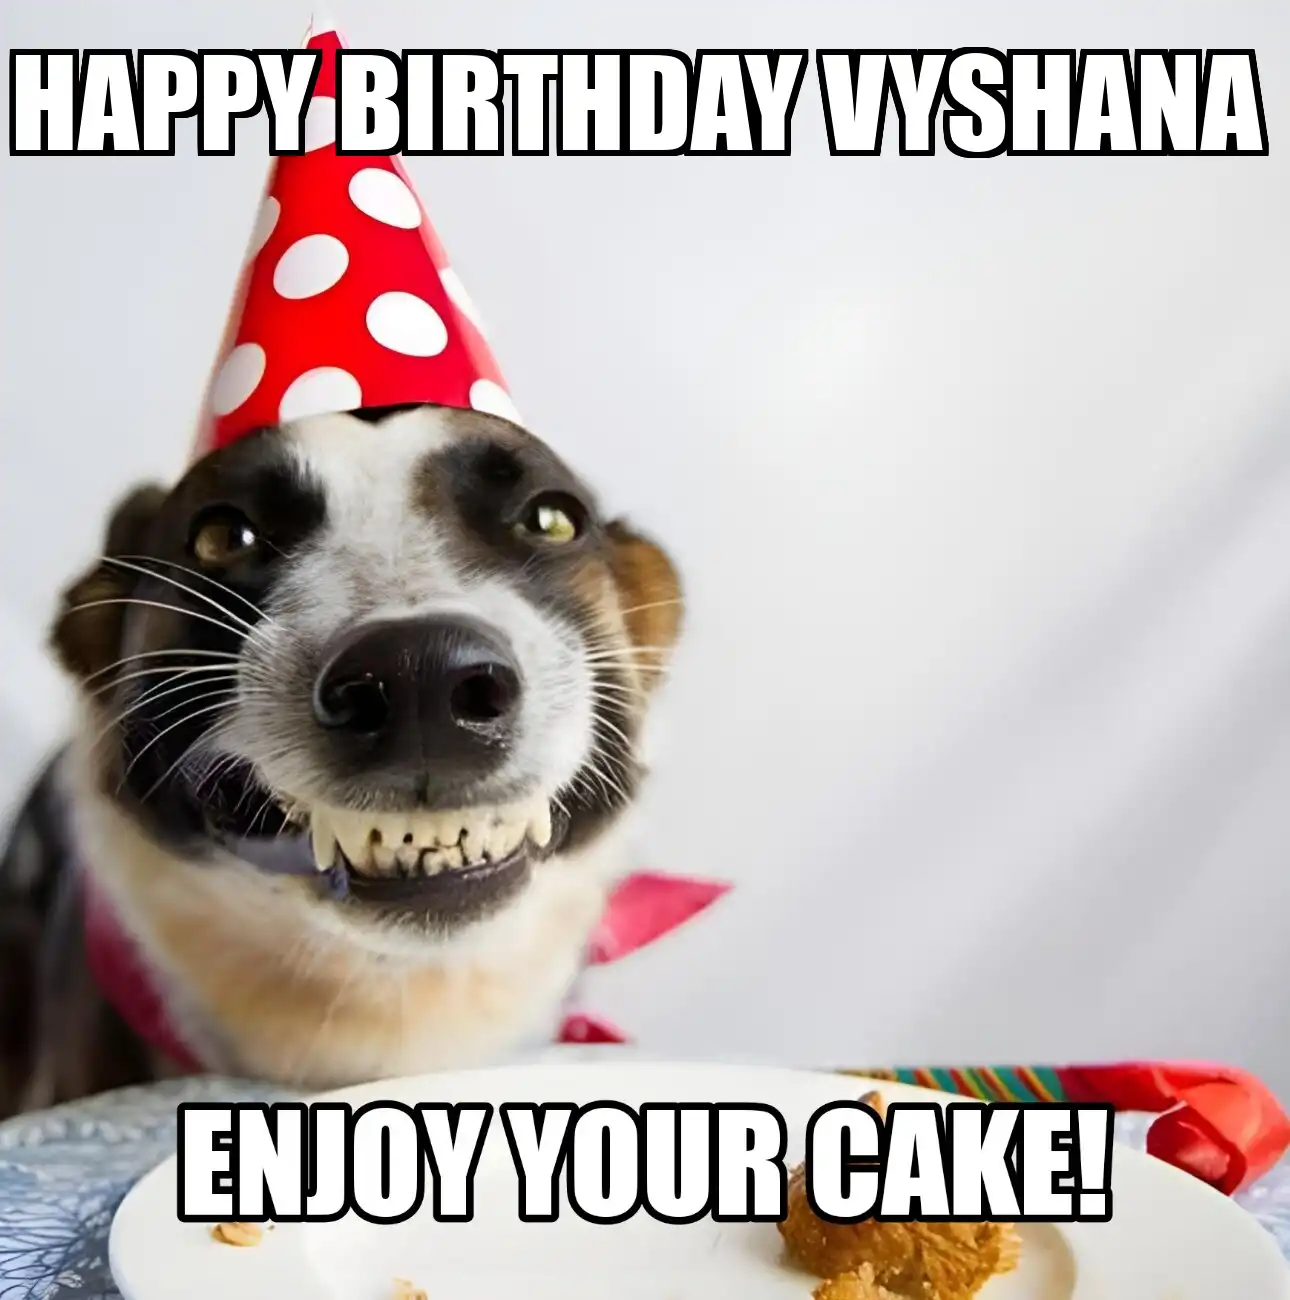 Happy Birthday Vyshana Enjoy Your Cake Dog Meme